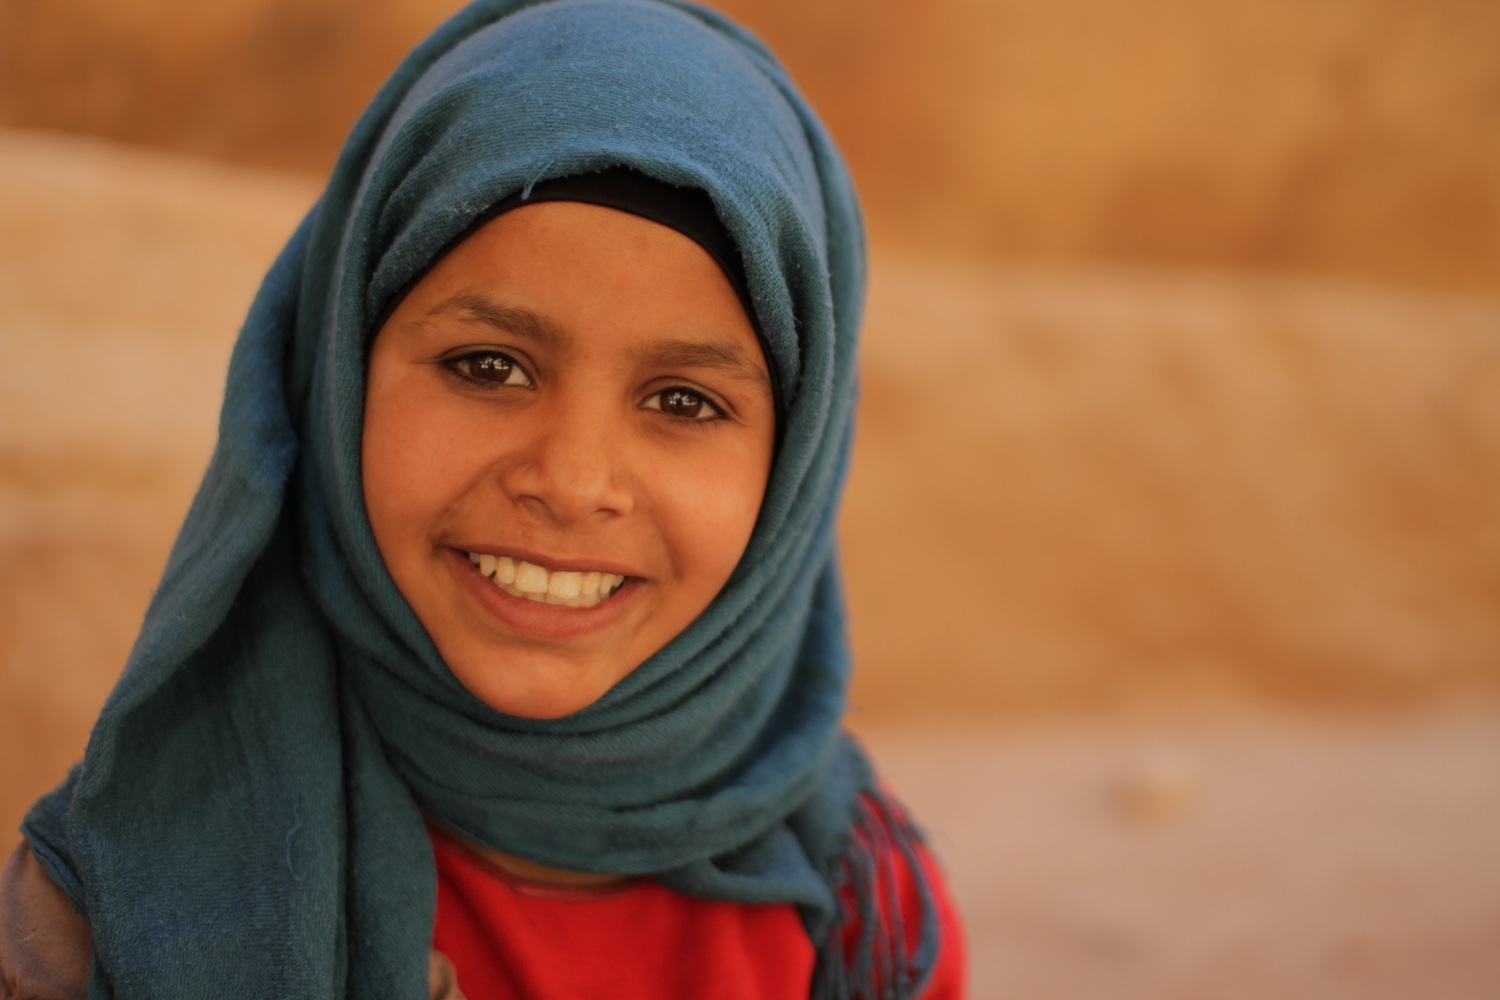 Bedouin Girl Petra by Daniel Adamson